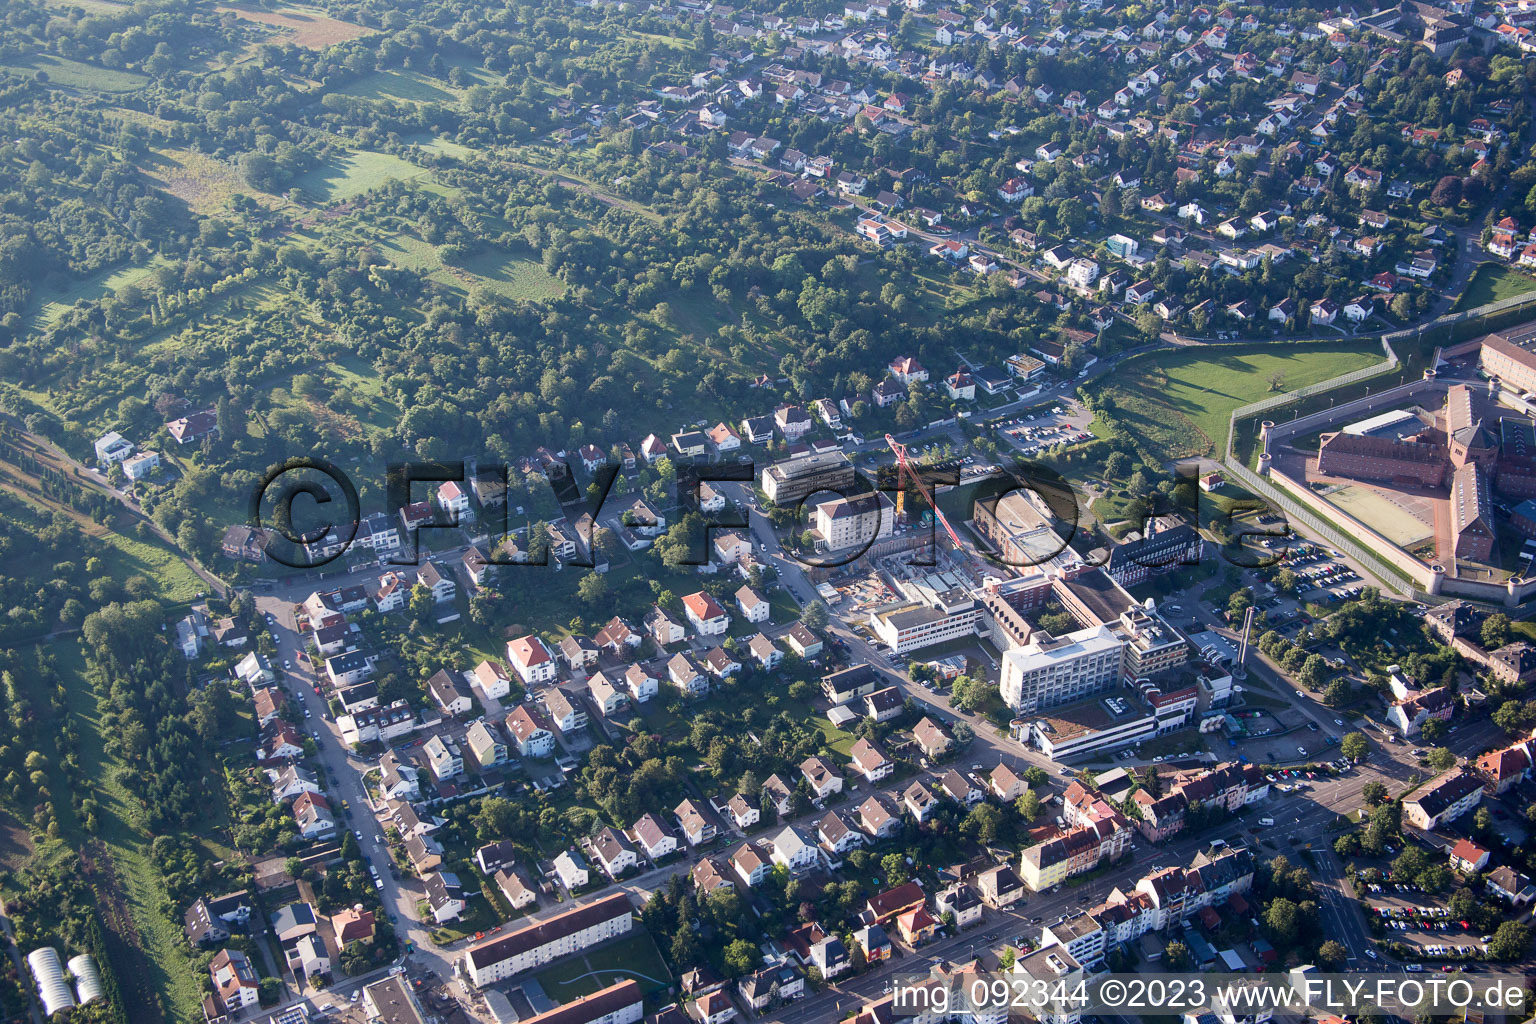 Vue aérienne de Clinique Prince Stirum du nord à Bruchsal dans le département Bade-Wurtemberg, Allemagne